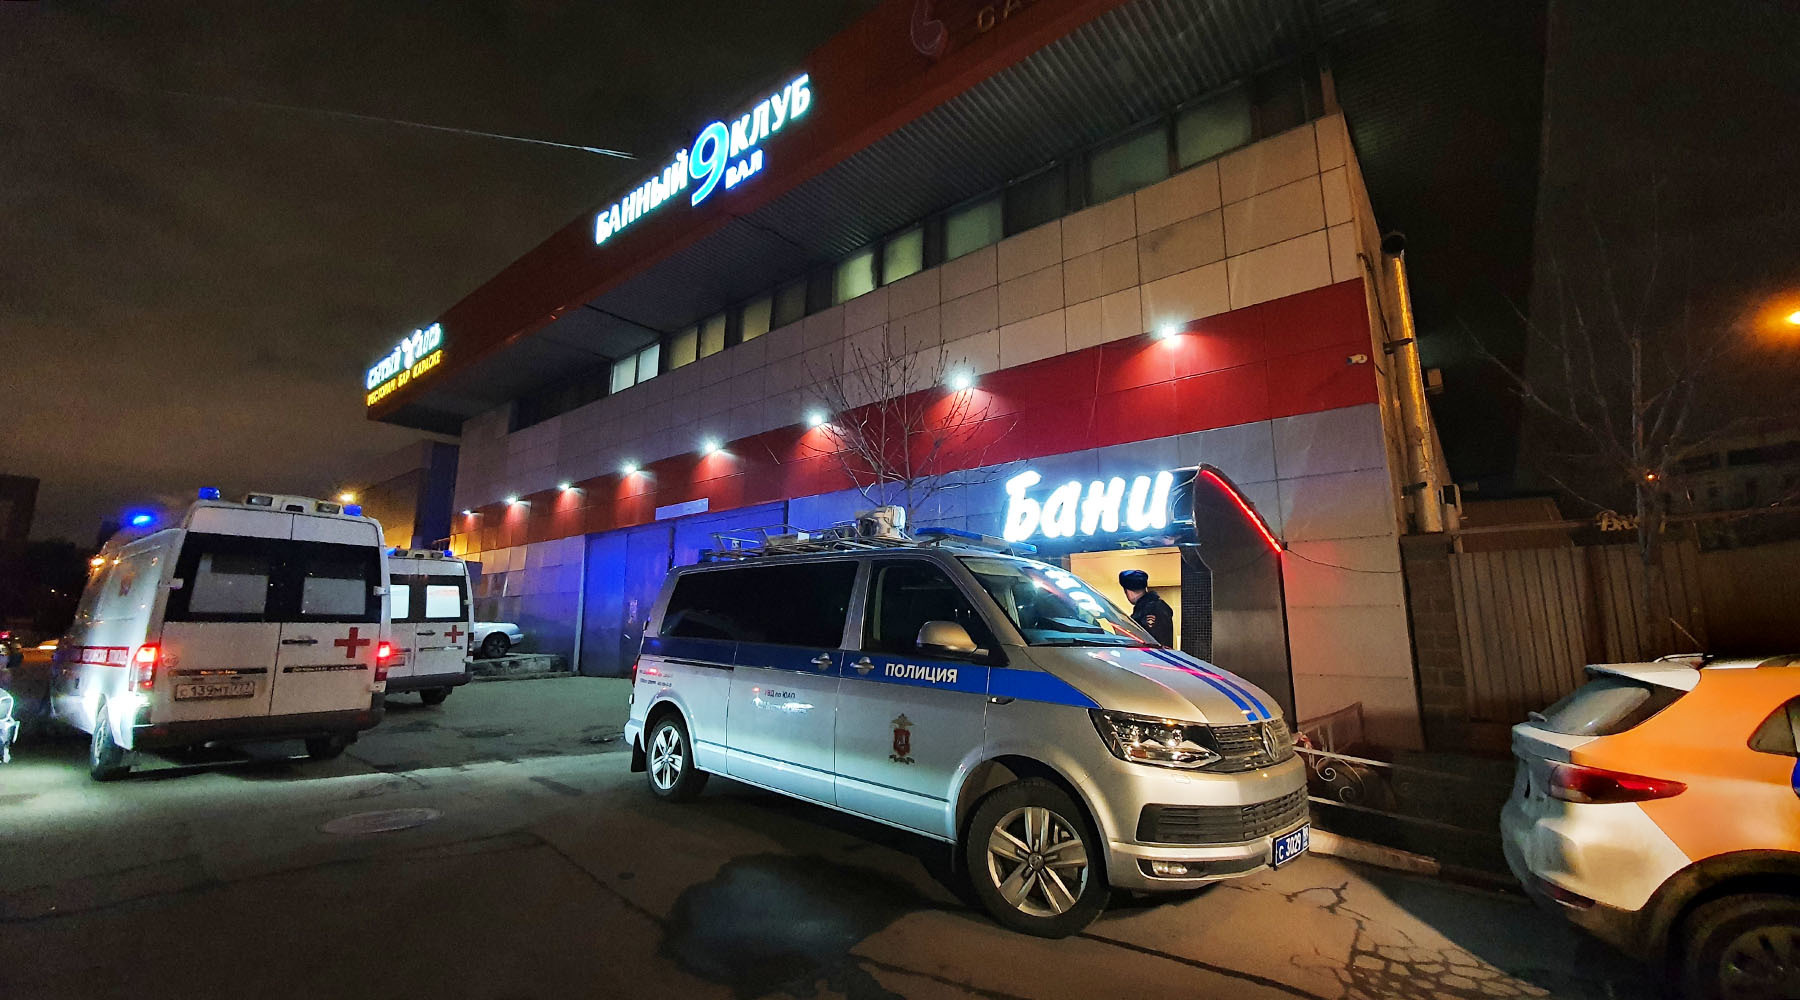 Вечеринка с сухим льдом: что известно о гибели трёх человек в банном комплексе в Москве